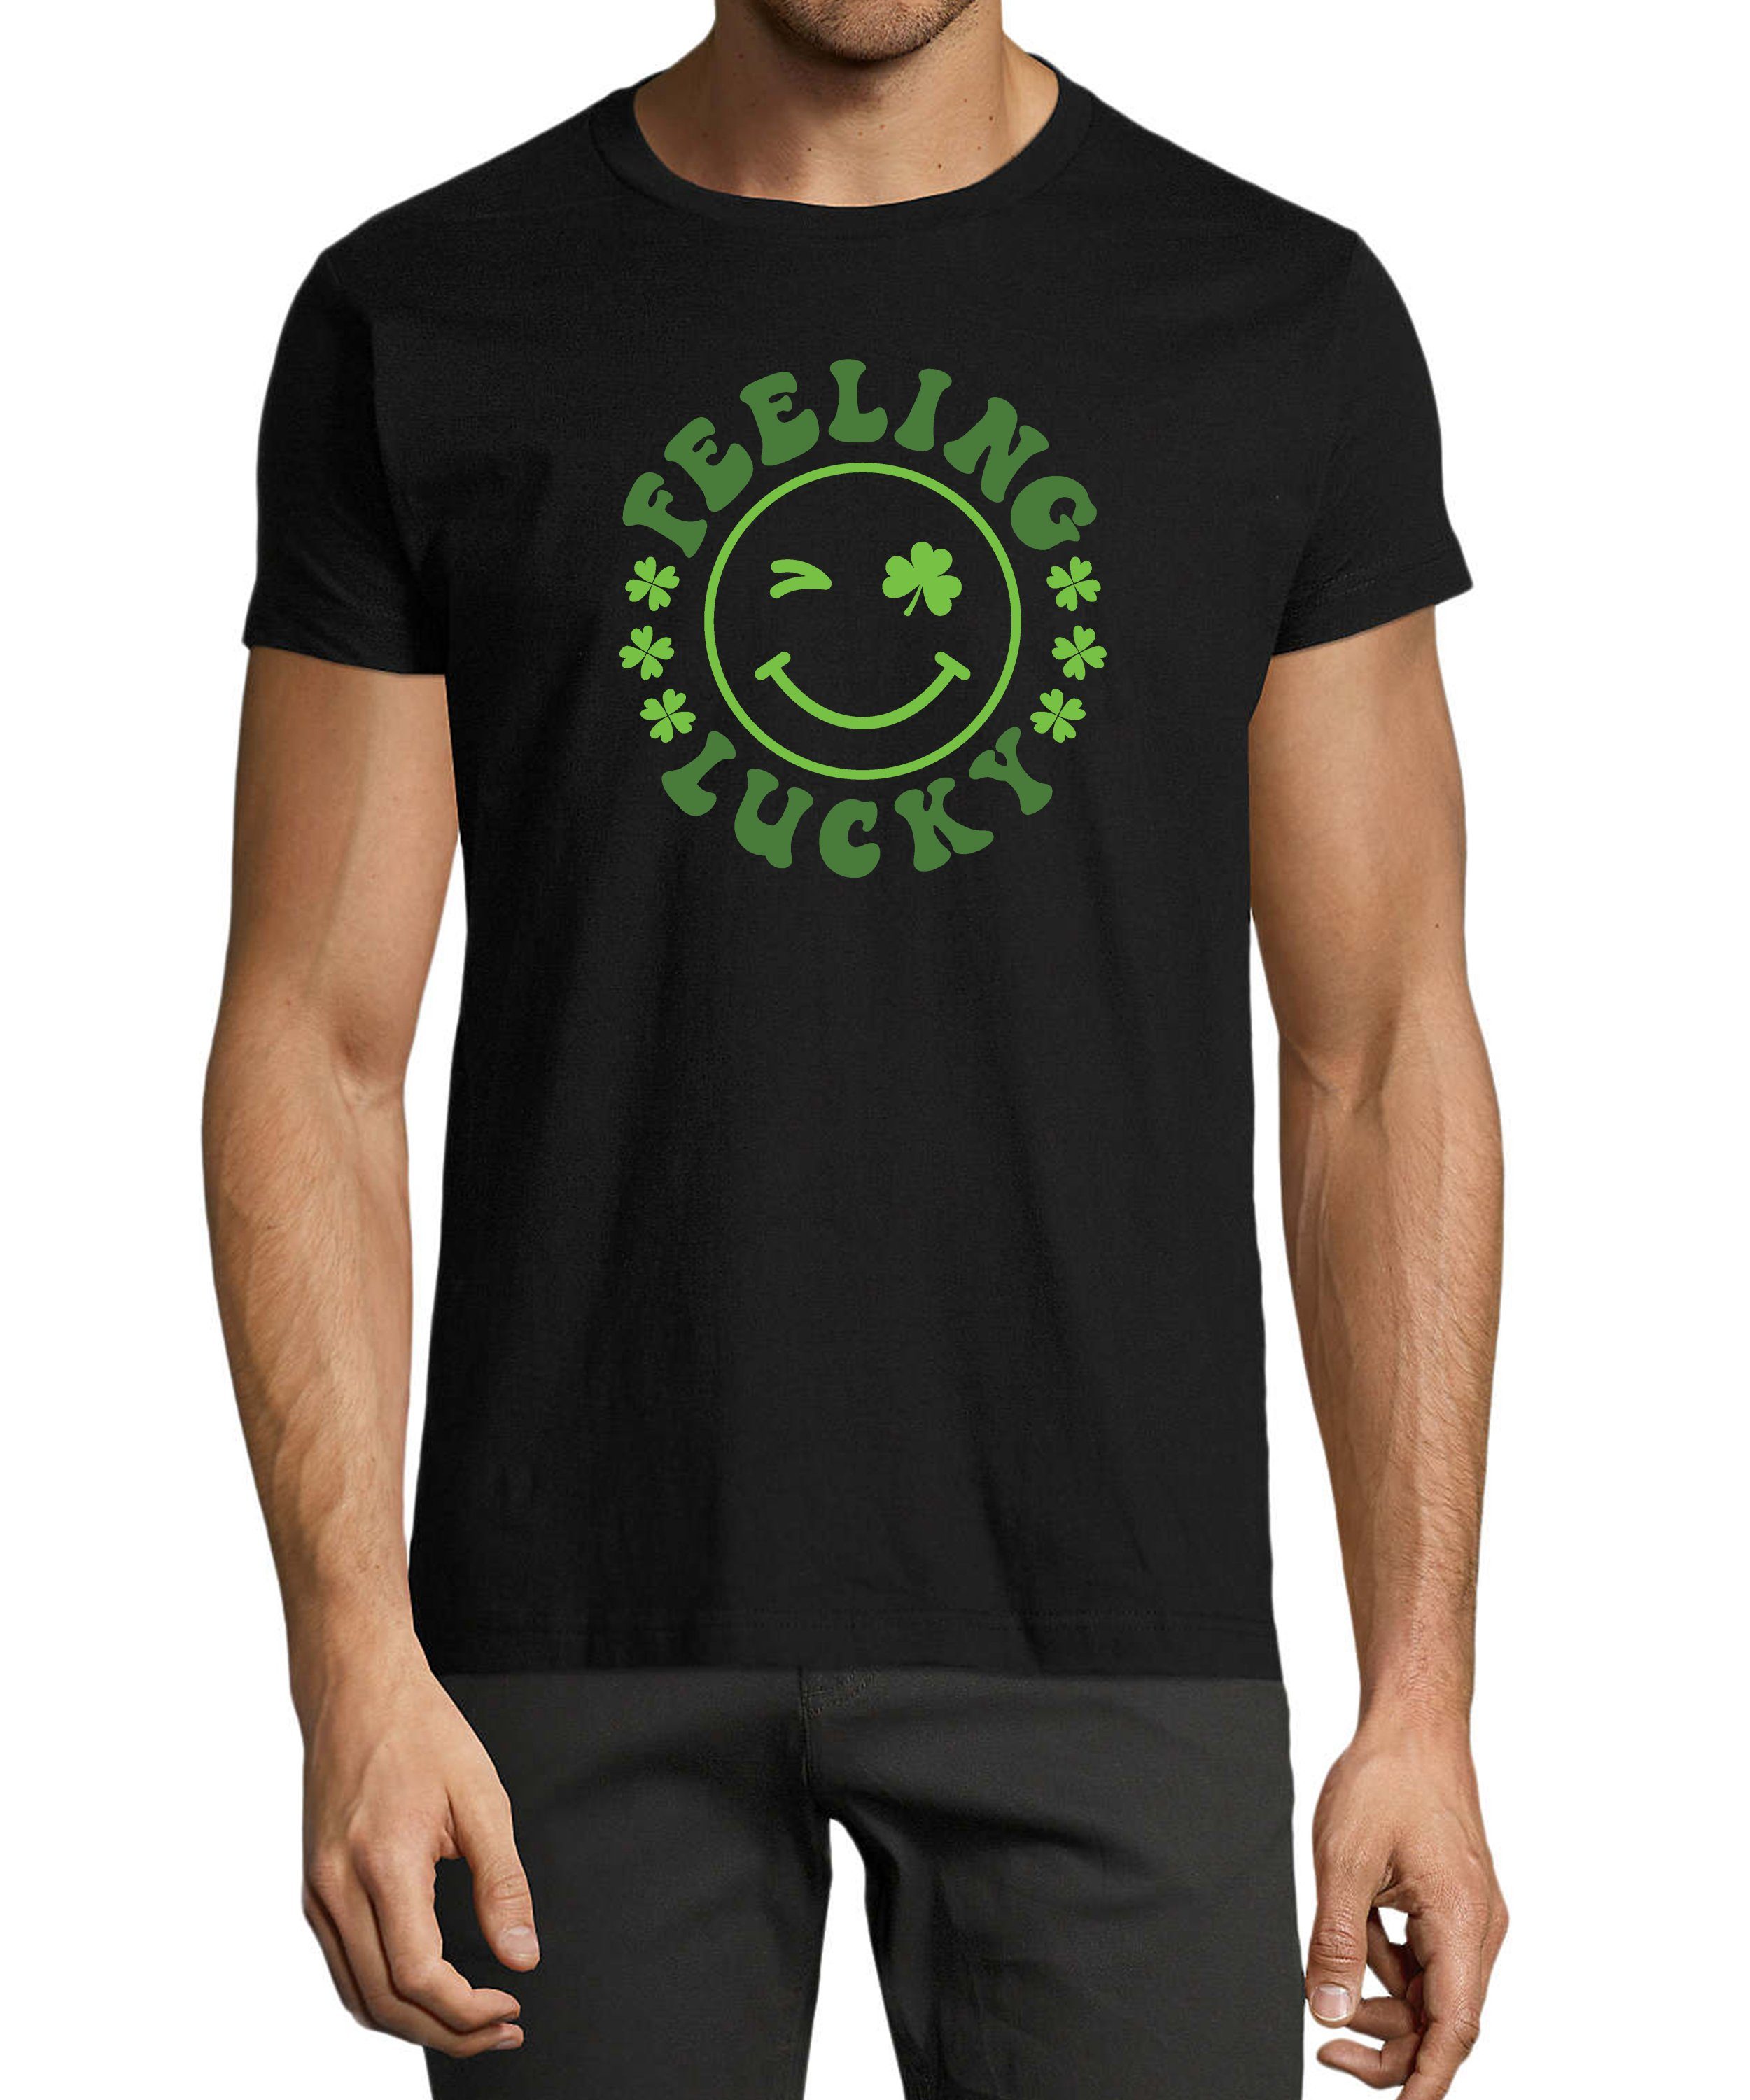 MyDesign24 T-Shirt Herren Smiley Print Shirt - Zwinkernder Smiley mit Kleeblättern Baumwollshirt mit Aufdruck Regular Fit, i295 schwarz